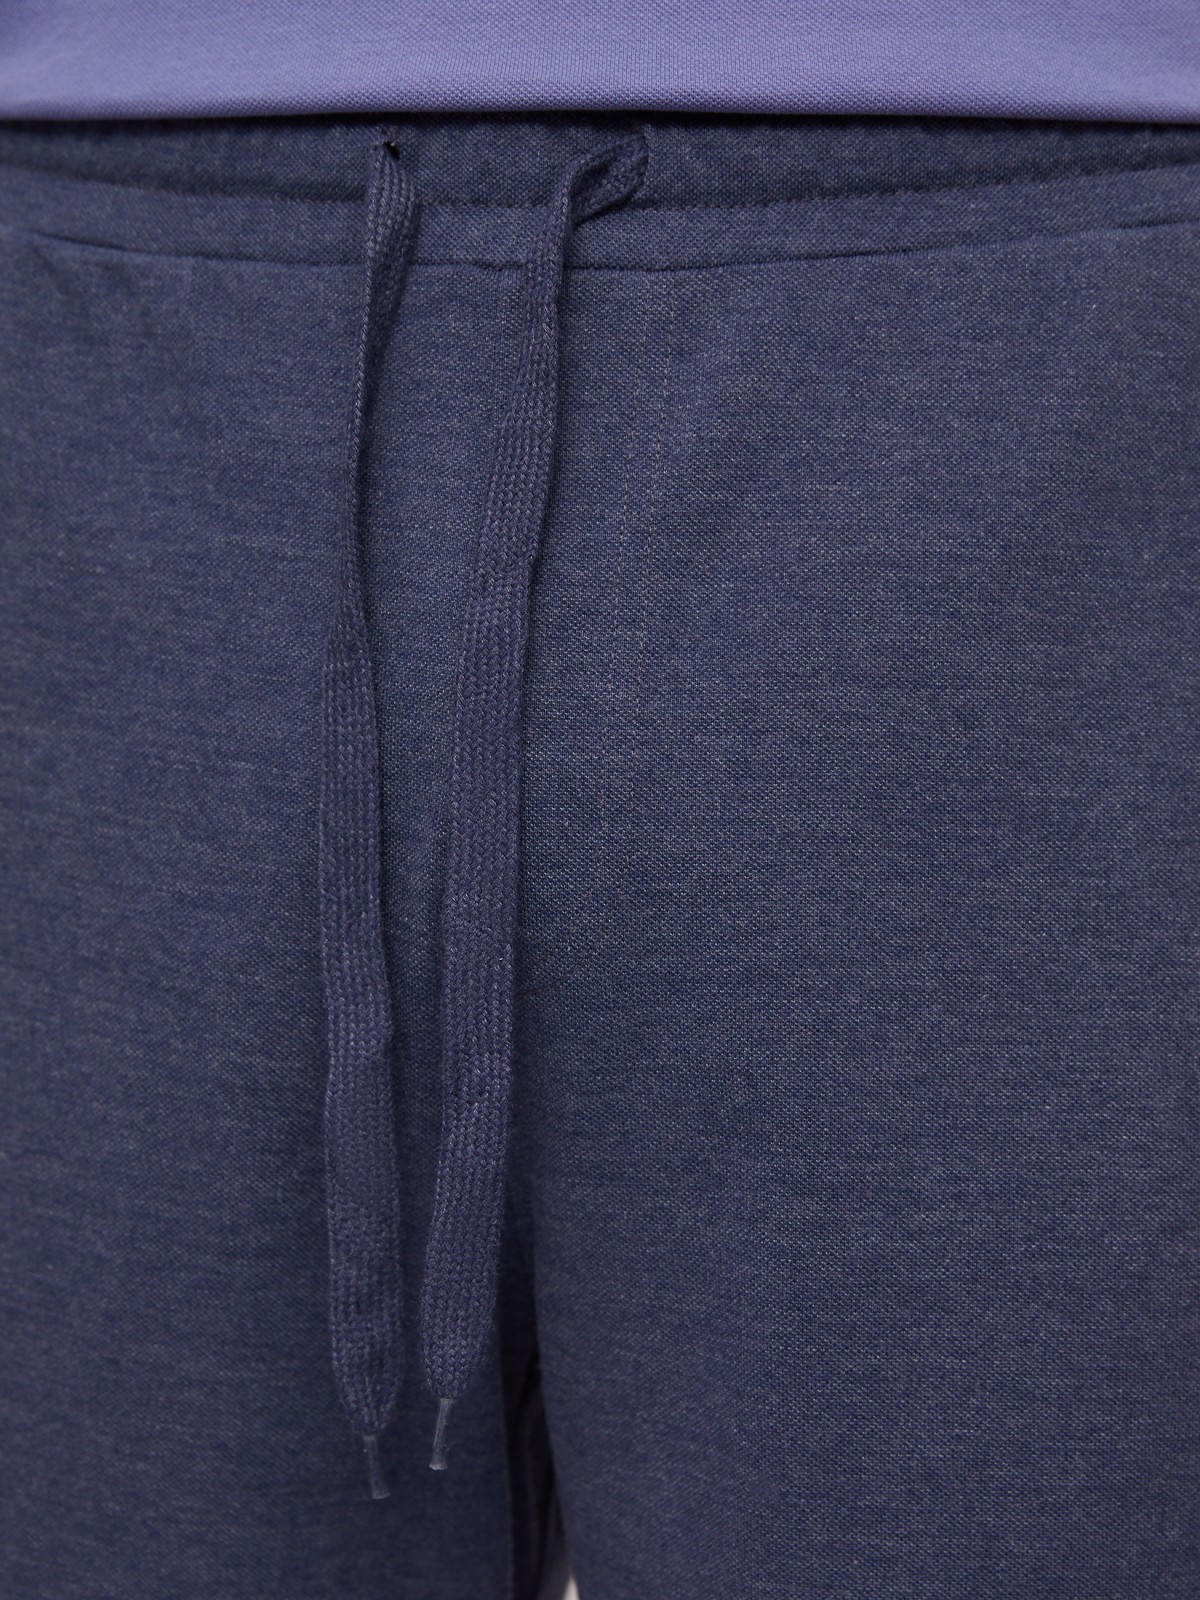 Трикотажные шорты на резинке zolla 014237J75032, цвет голубой, размер S - фото 4